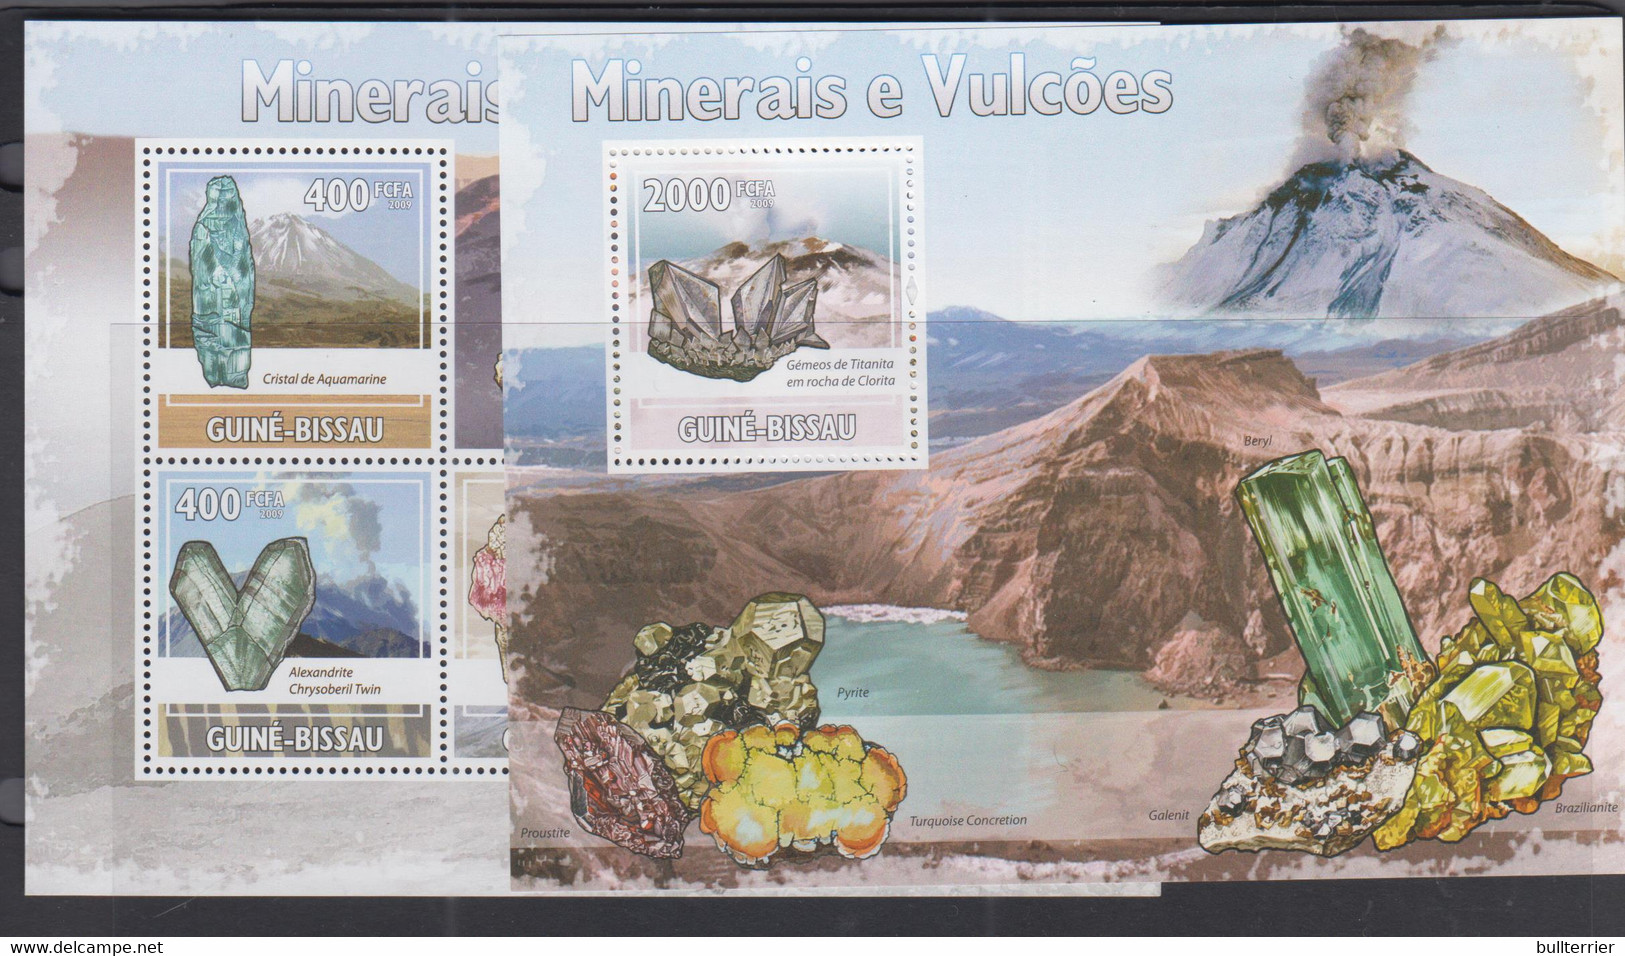 VOLCANOES - GUINEA BISSAU - 2009 - MINERALS & VOLCANOES SHEETLET OF 6 + S/SHEET  MINT NEVER HINGED - Volcanes